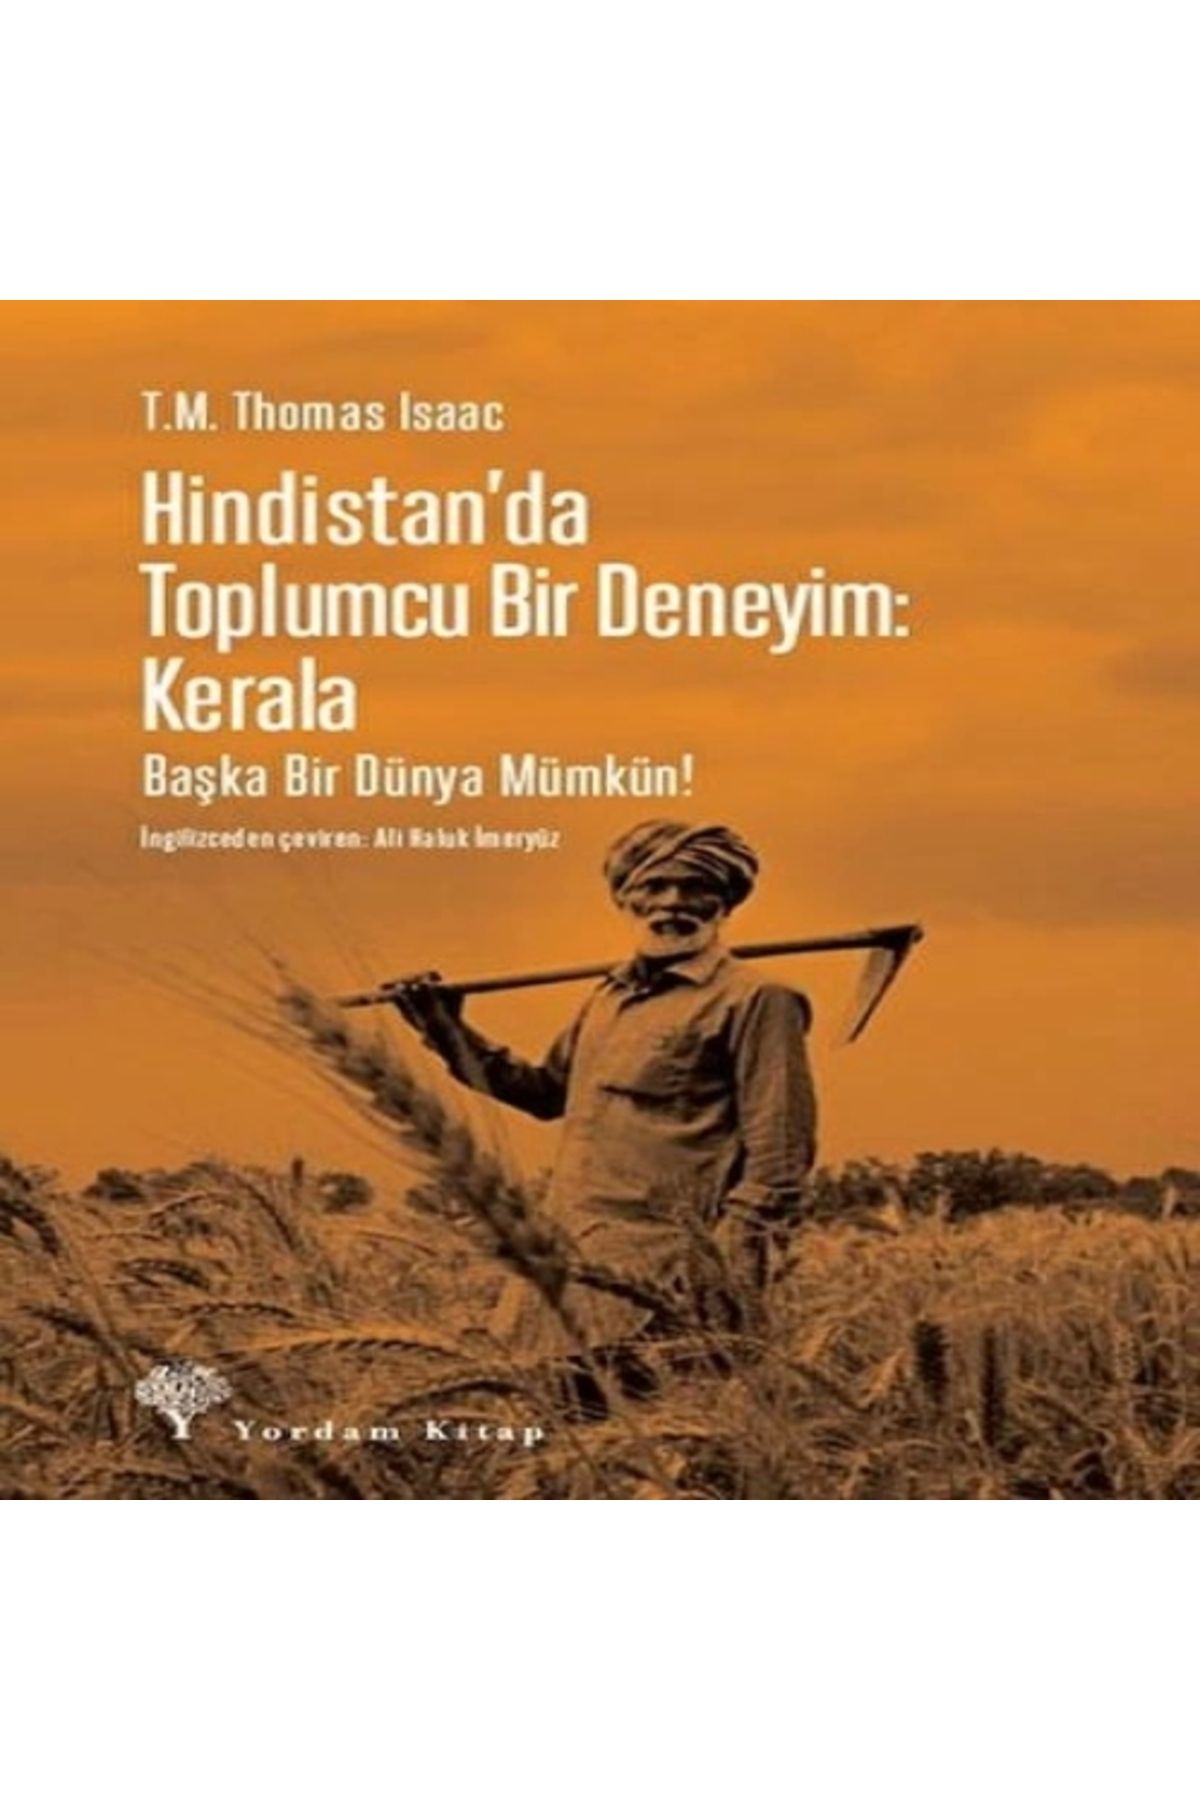 Yordam Kitap Hindistan'da Toplumcu Bir Deneyim: Kerala